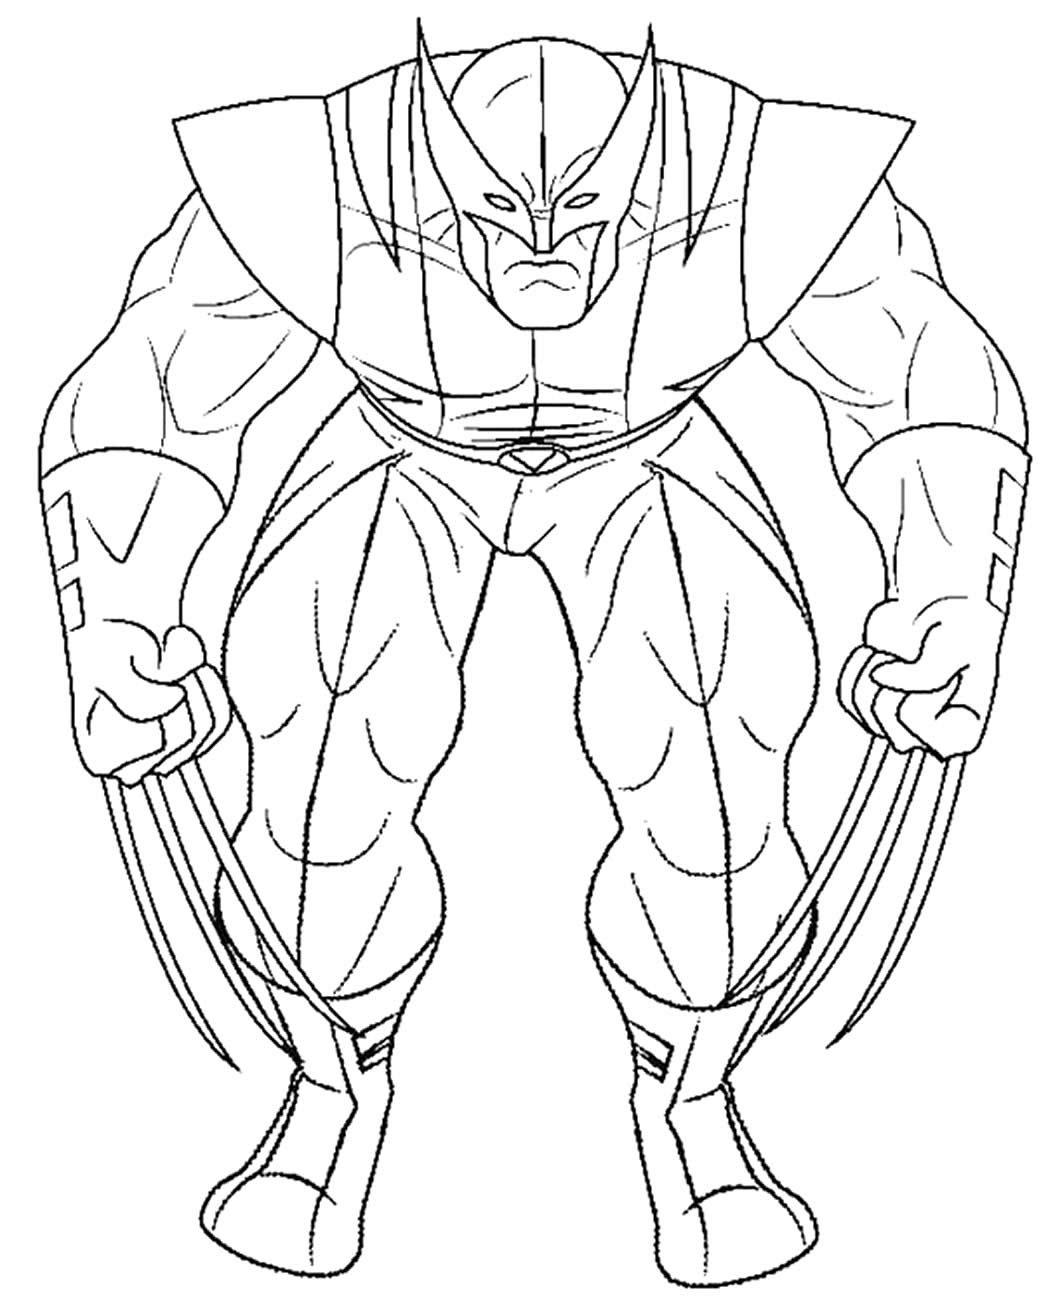 Gabarit Wolverine à imprimer et colorier